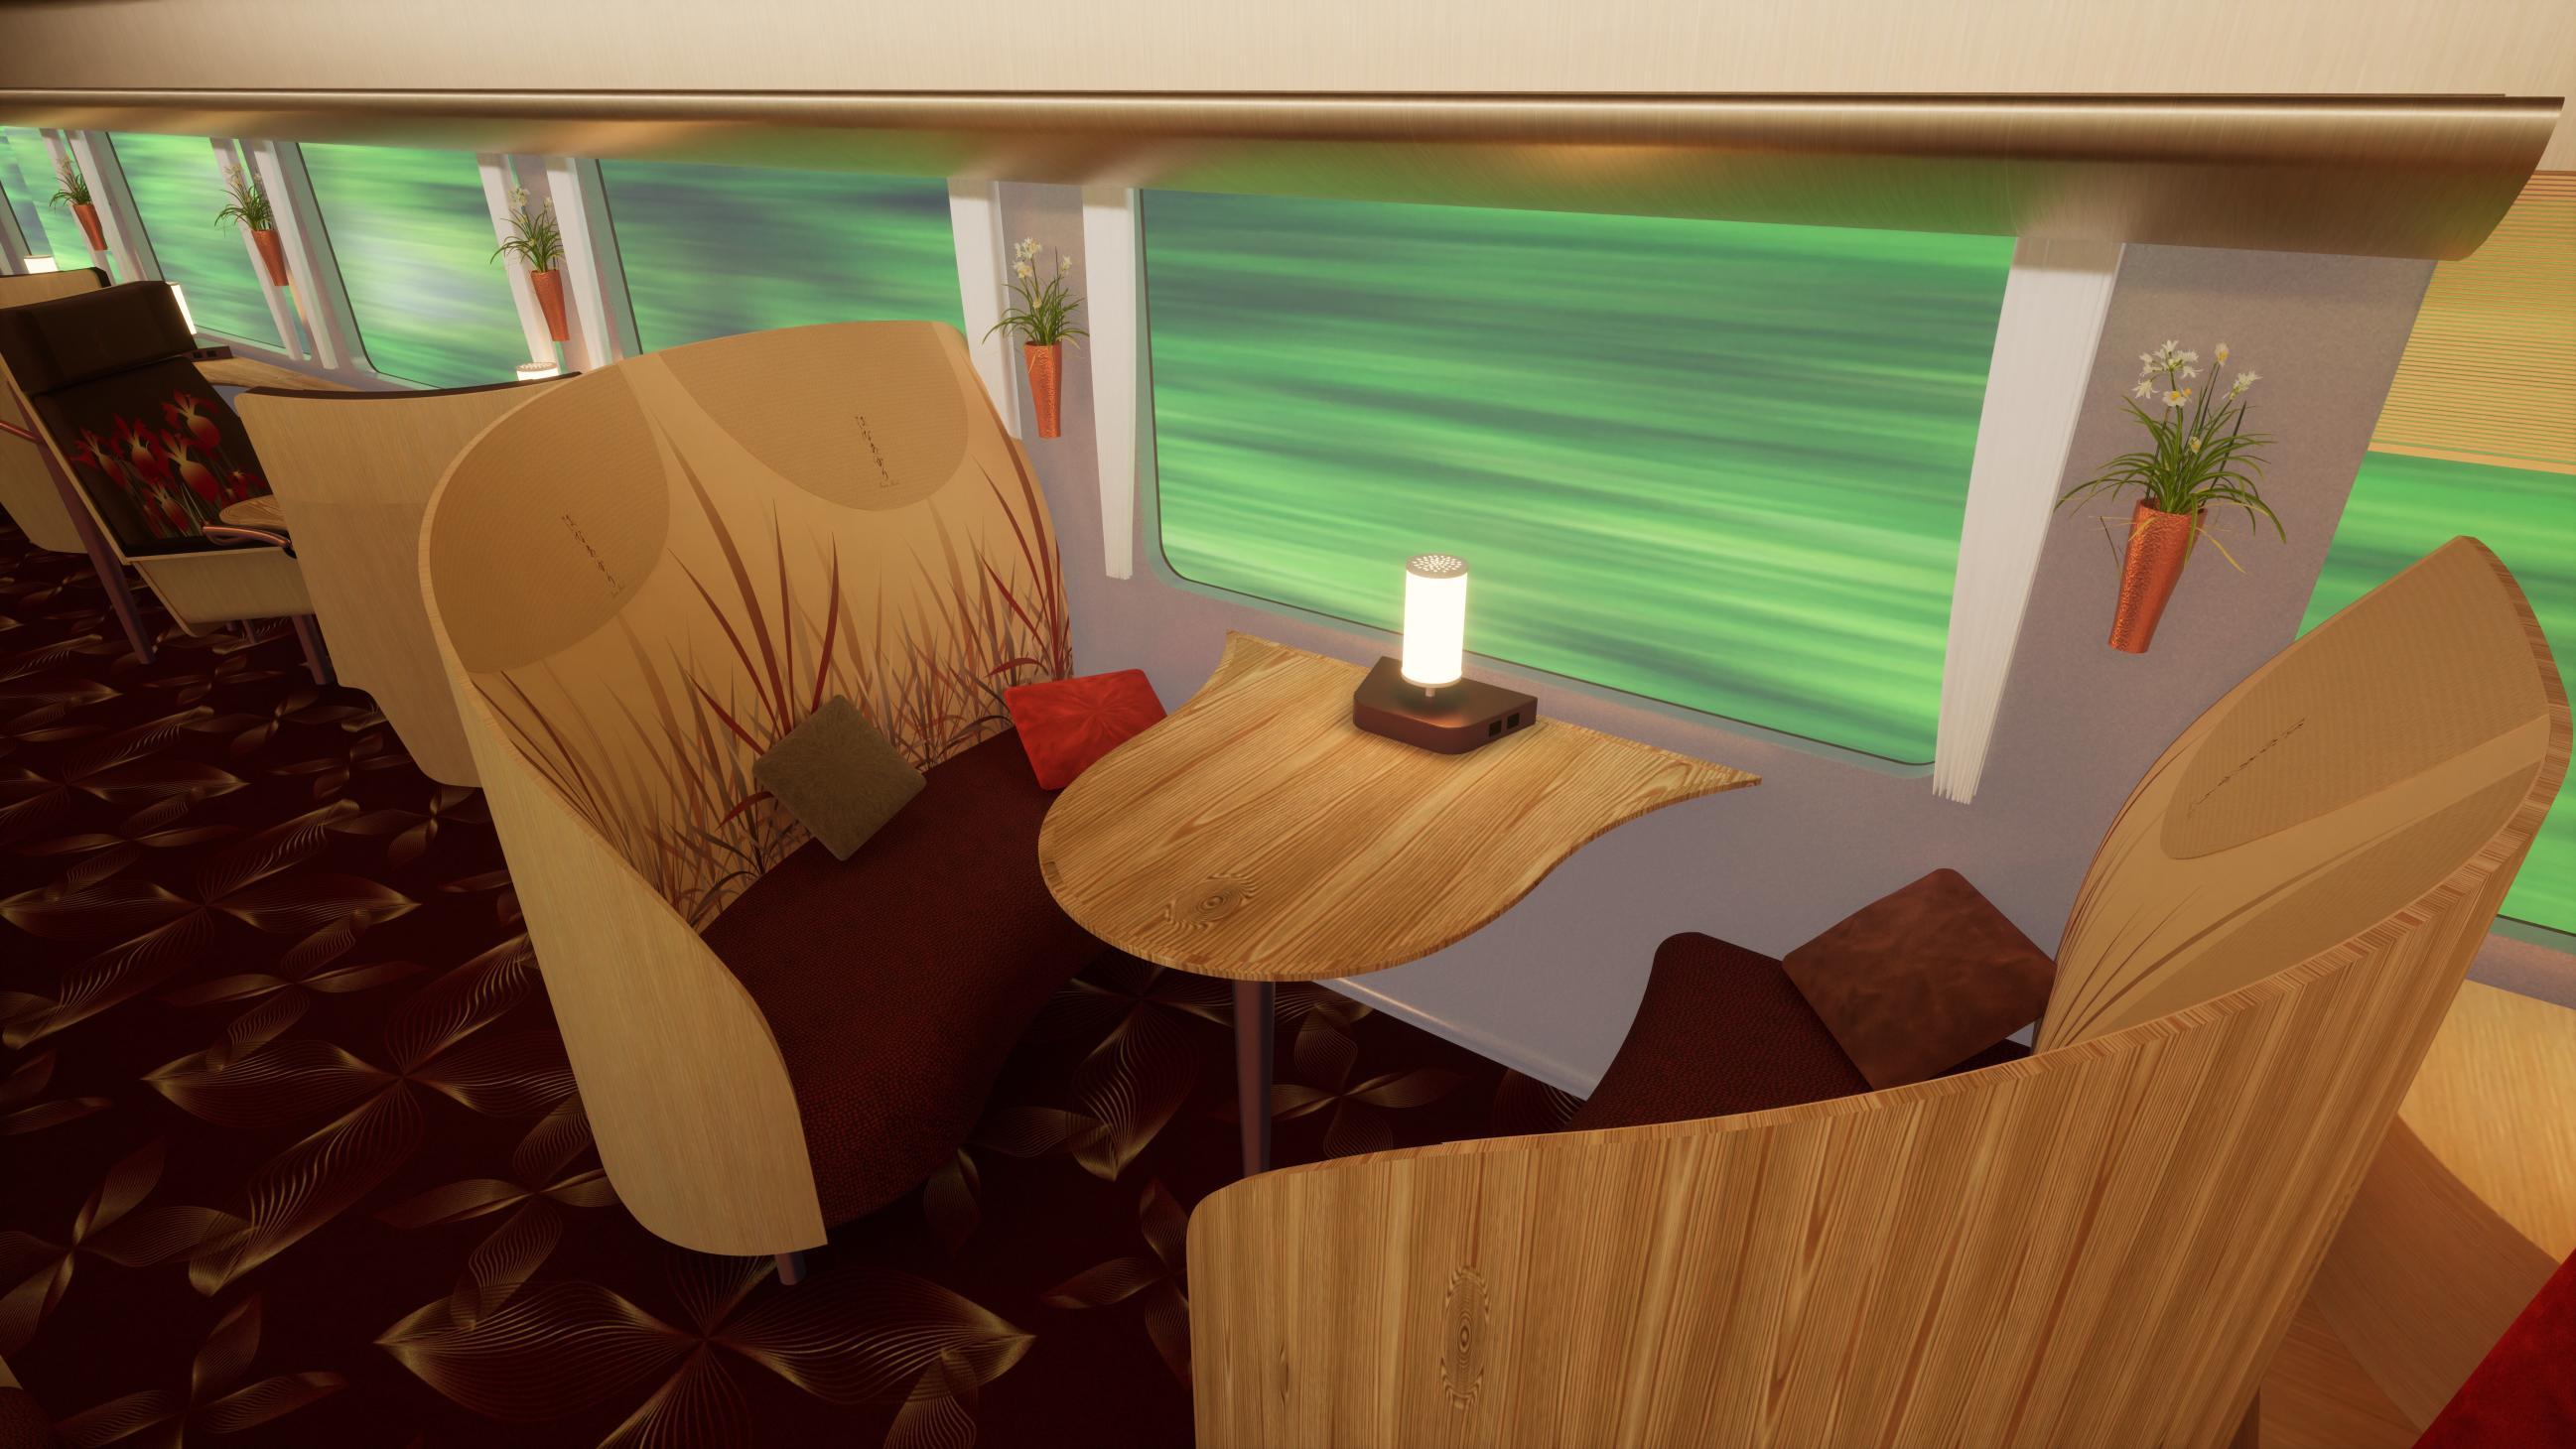 グリーン車（イメージ）designed by Yasuyuki KAWANISHI + ICH IBANSEN/nextstations